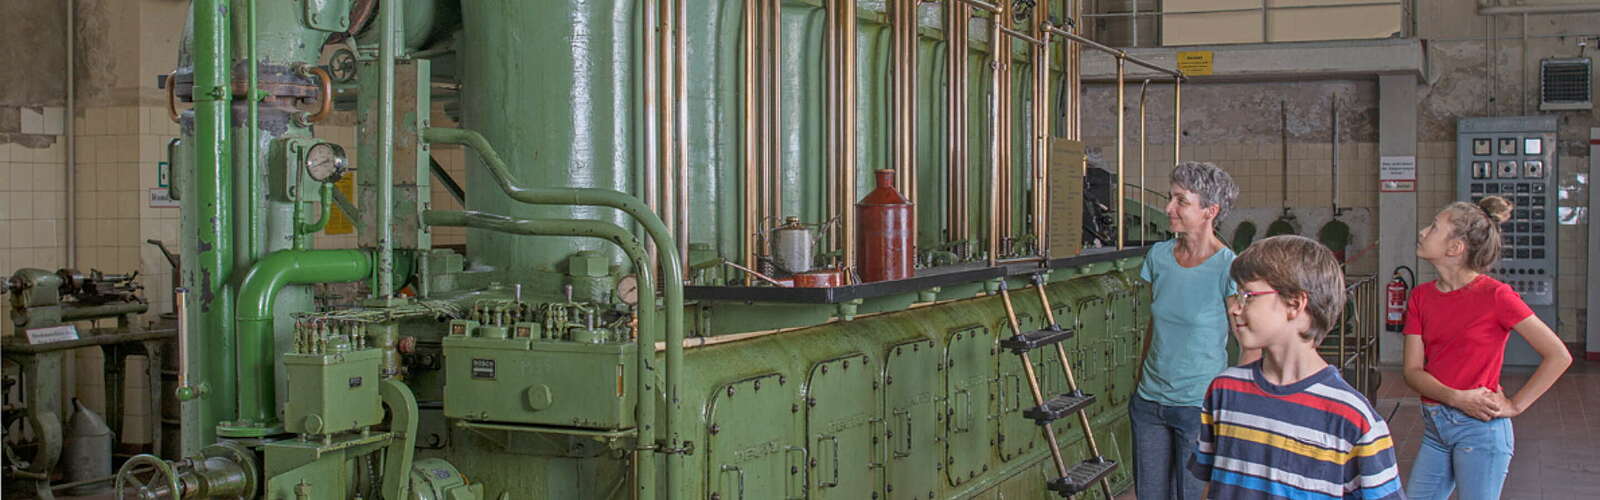 Dieselmotor im Sender- und Funktechnikmuseum Königs Wusterhausen,
        
    

        
        
            Foto: Nada Quenzel